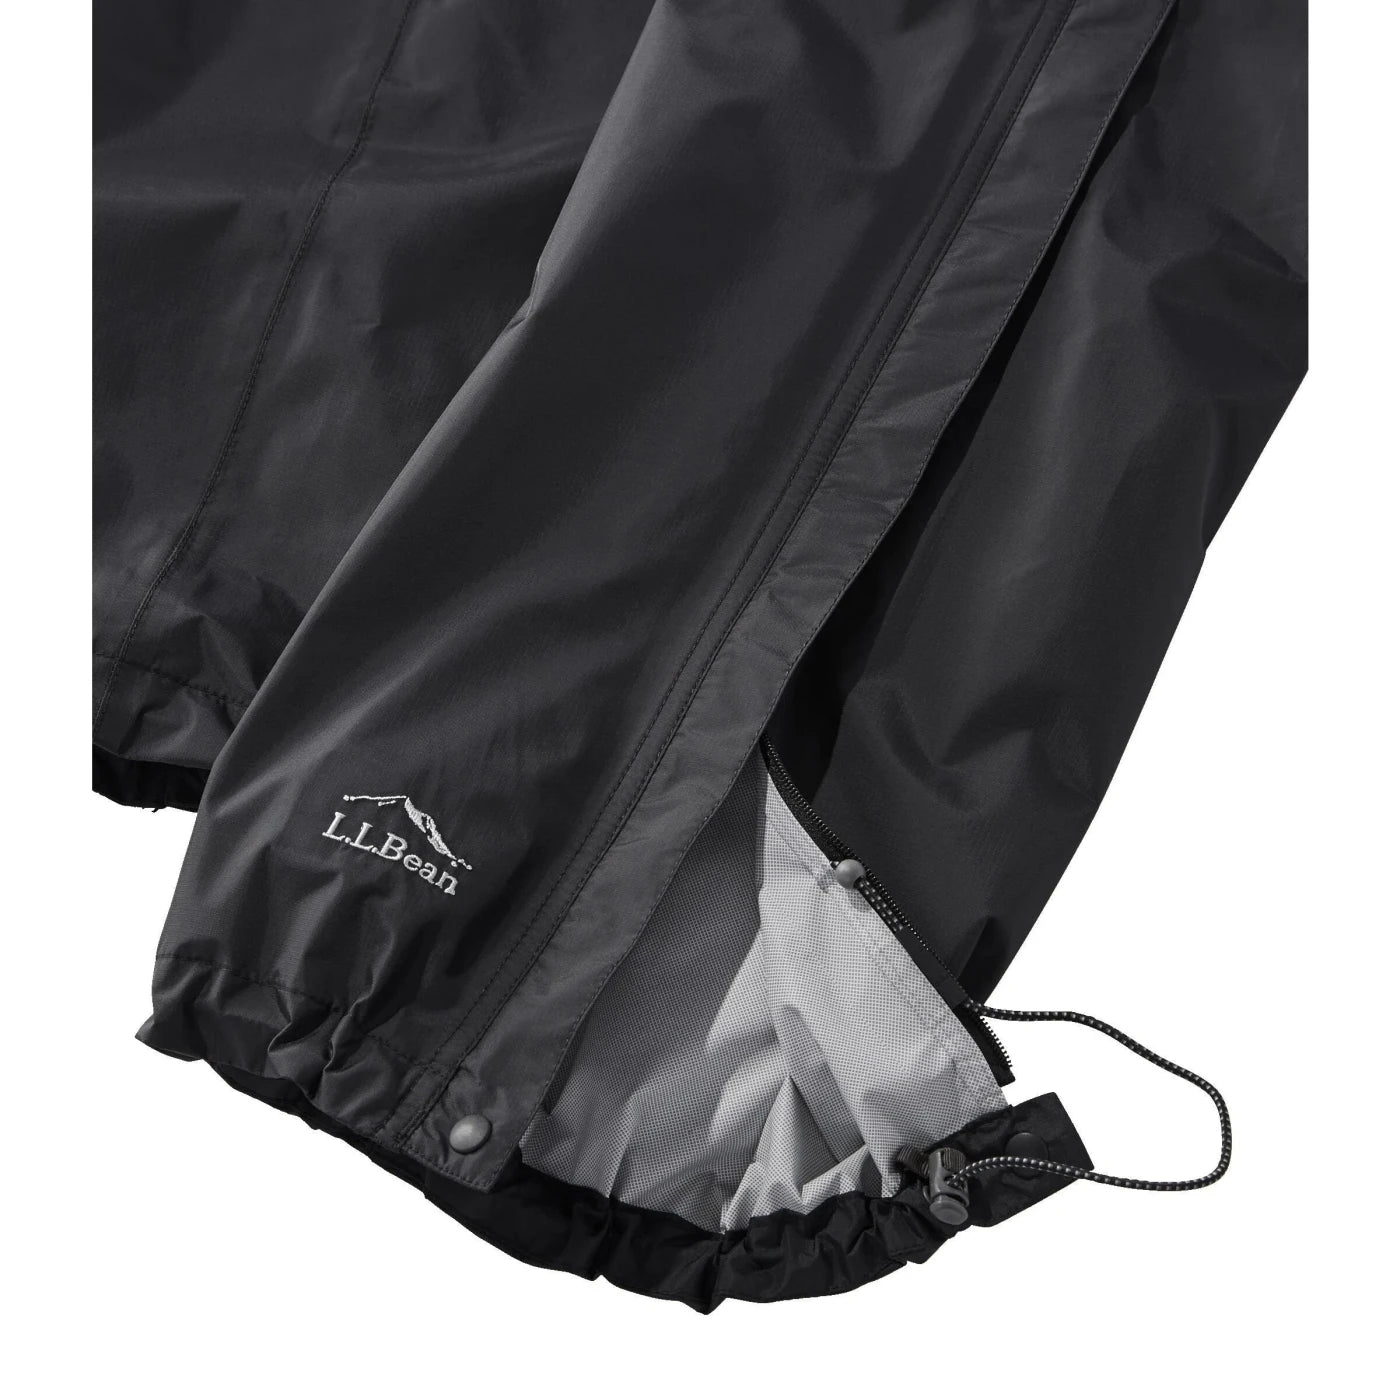 L.L. Bean W's Trail Model Rain Pants, Black, view of zipper on pant leg